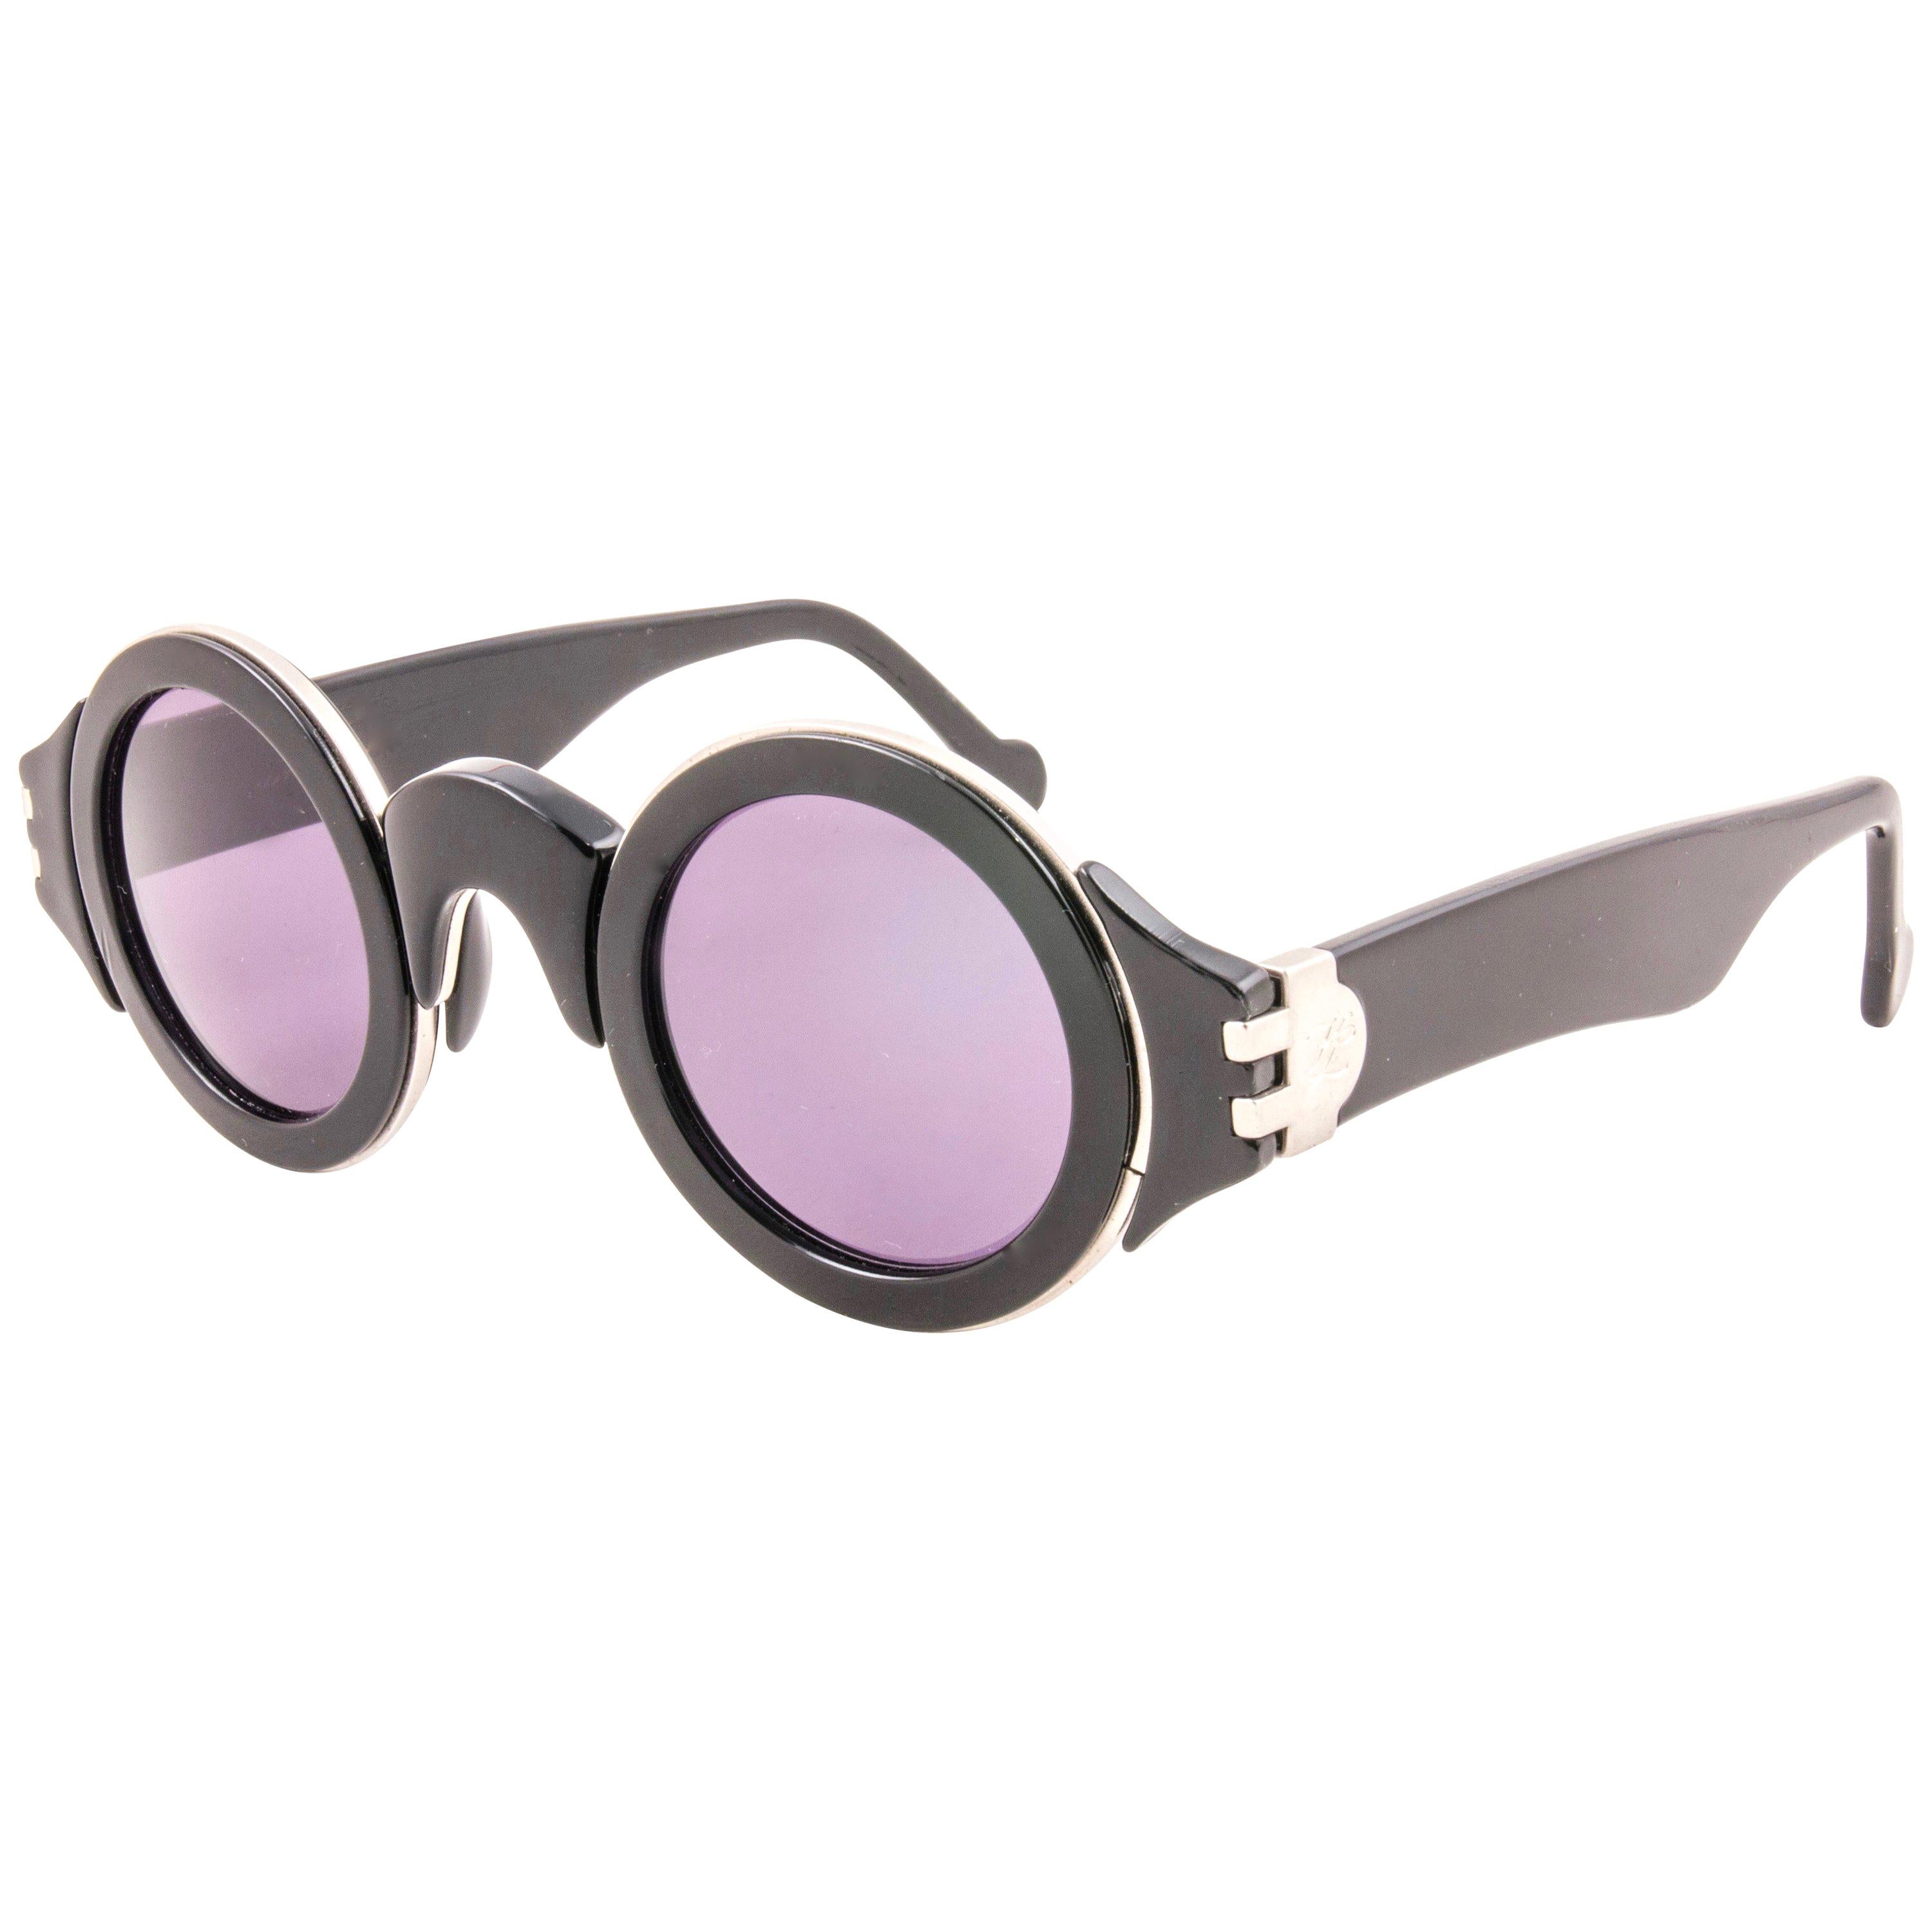 Auffällige Karl Lagerfeld 117 Round Sonnenbrille mit schwarzen und silbernen Einsätzen und makellosen grauen Gläsern.   

Dieses Paar Vintage Karl Lagerfeld ist eine seltene gesuchte Stück nicht zu verpassen!

Bitte beachten Sie, dass dieser Artikel